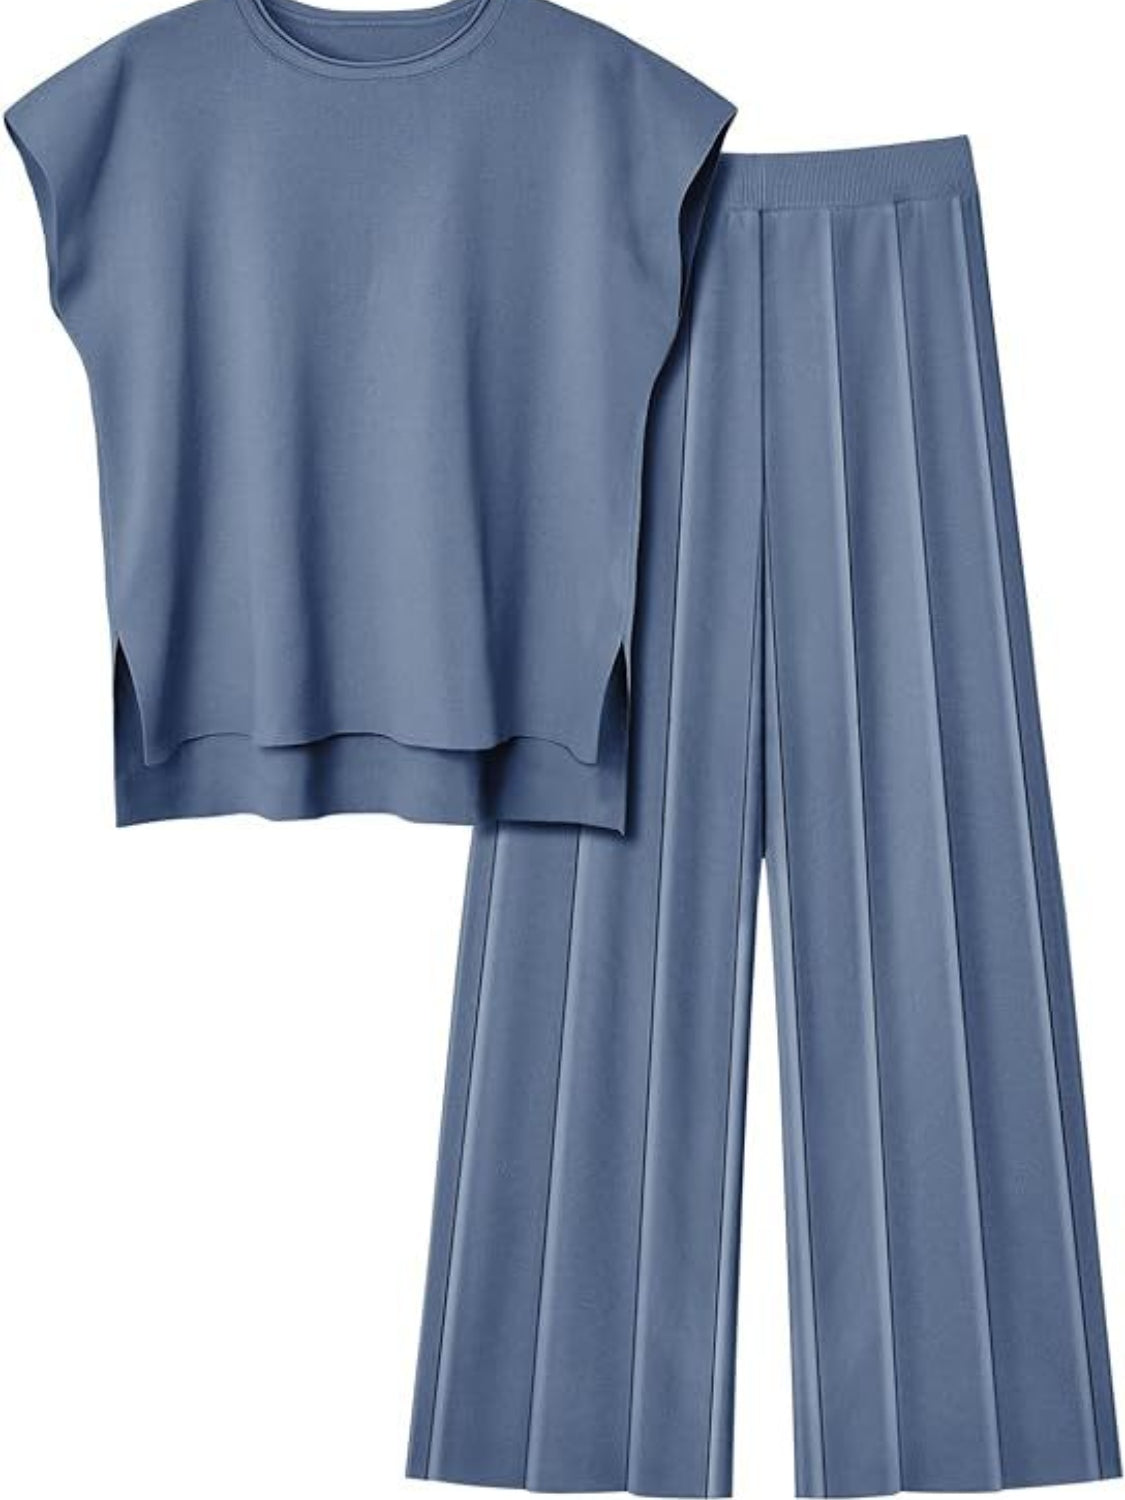 TEEK - Round Neck Cap Sleeve Top Pants Knit Set SET TEEK Trend Dusty  Blue S 